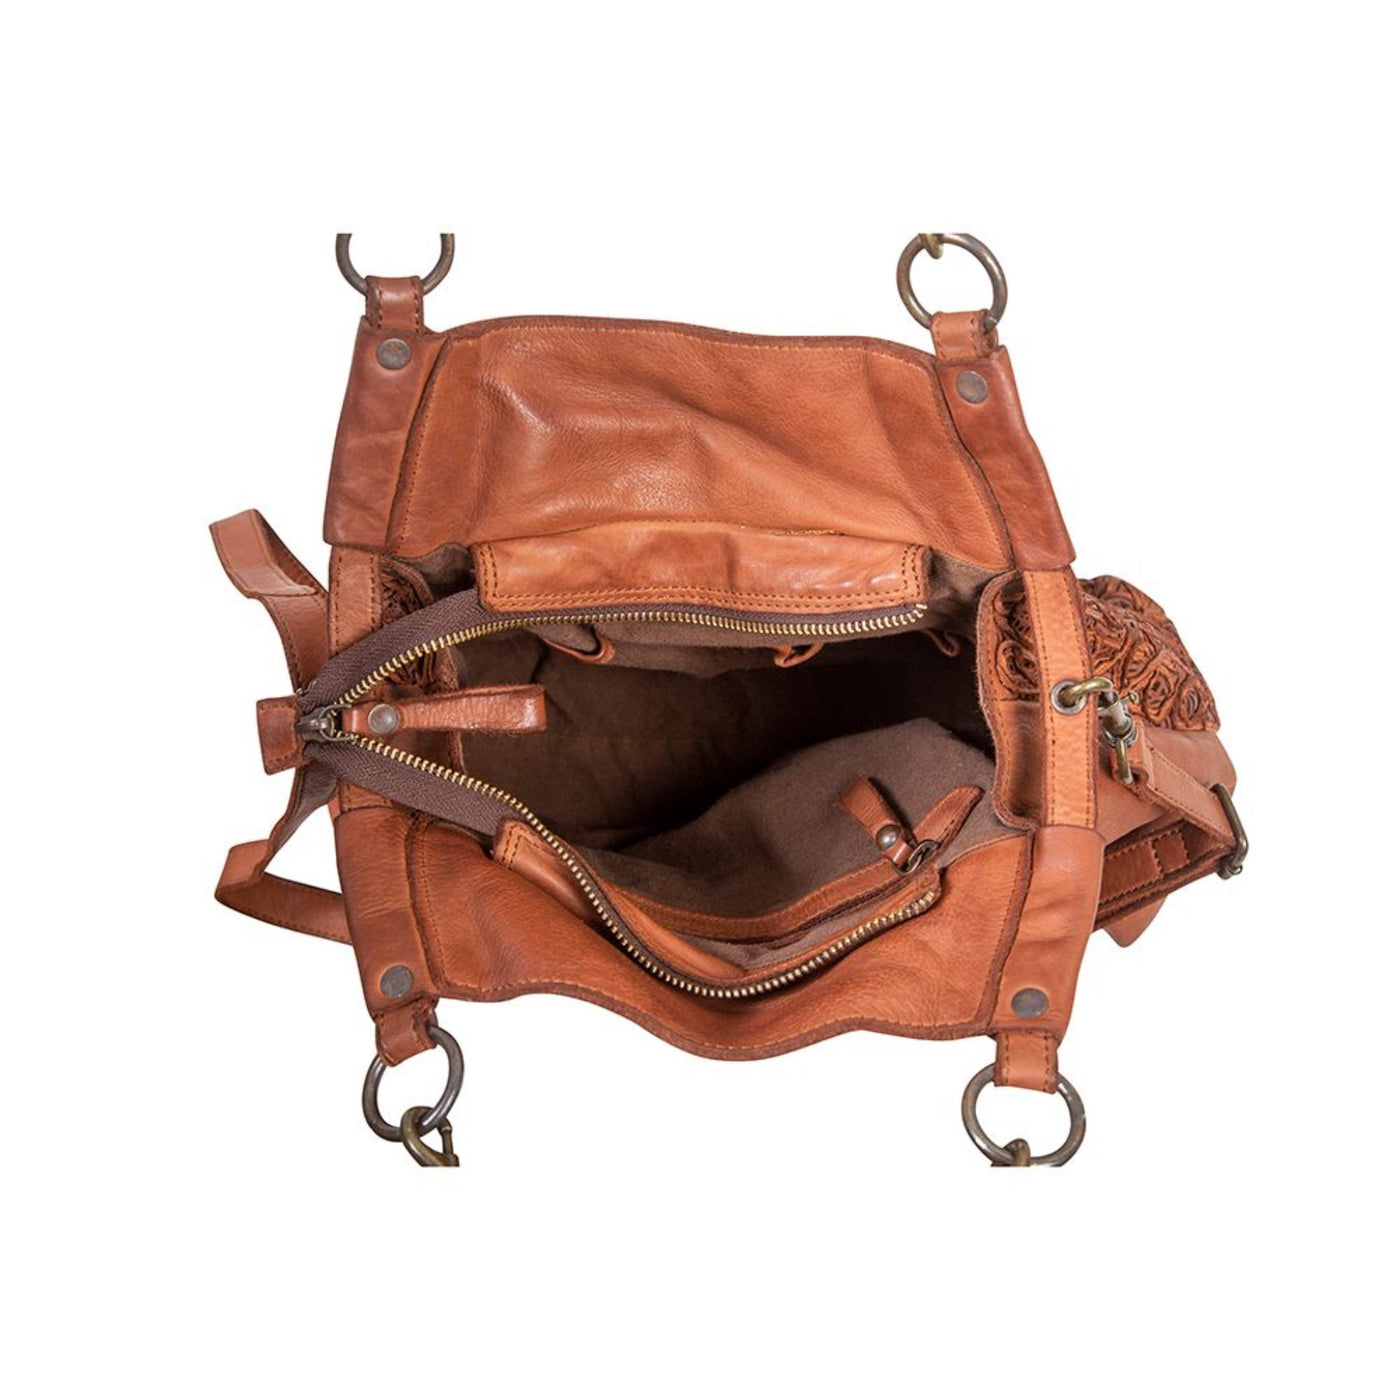 Myra - Aliphatic Leather & Hairon Bag